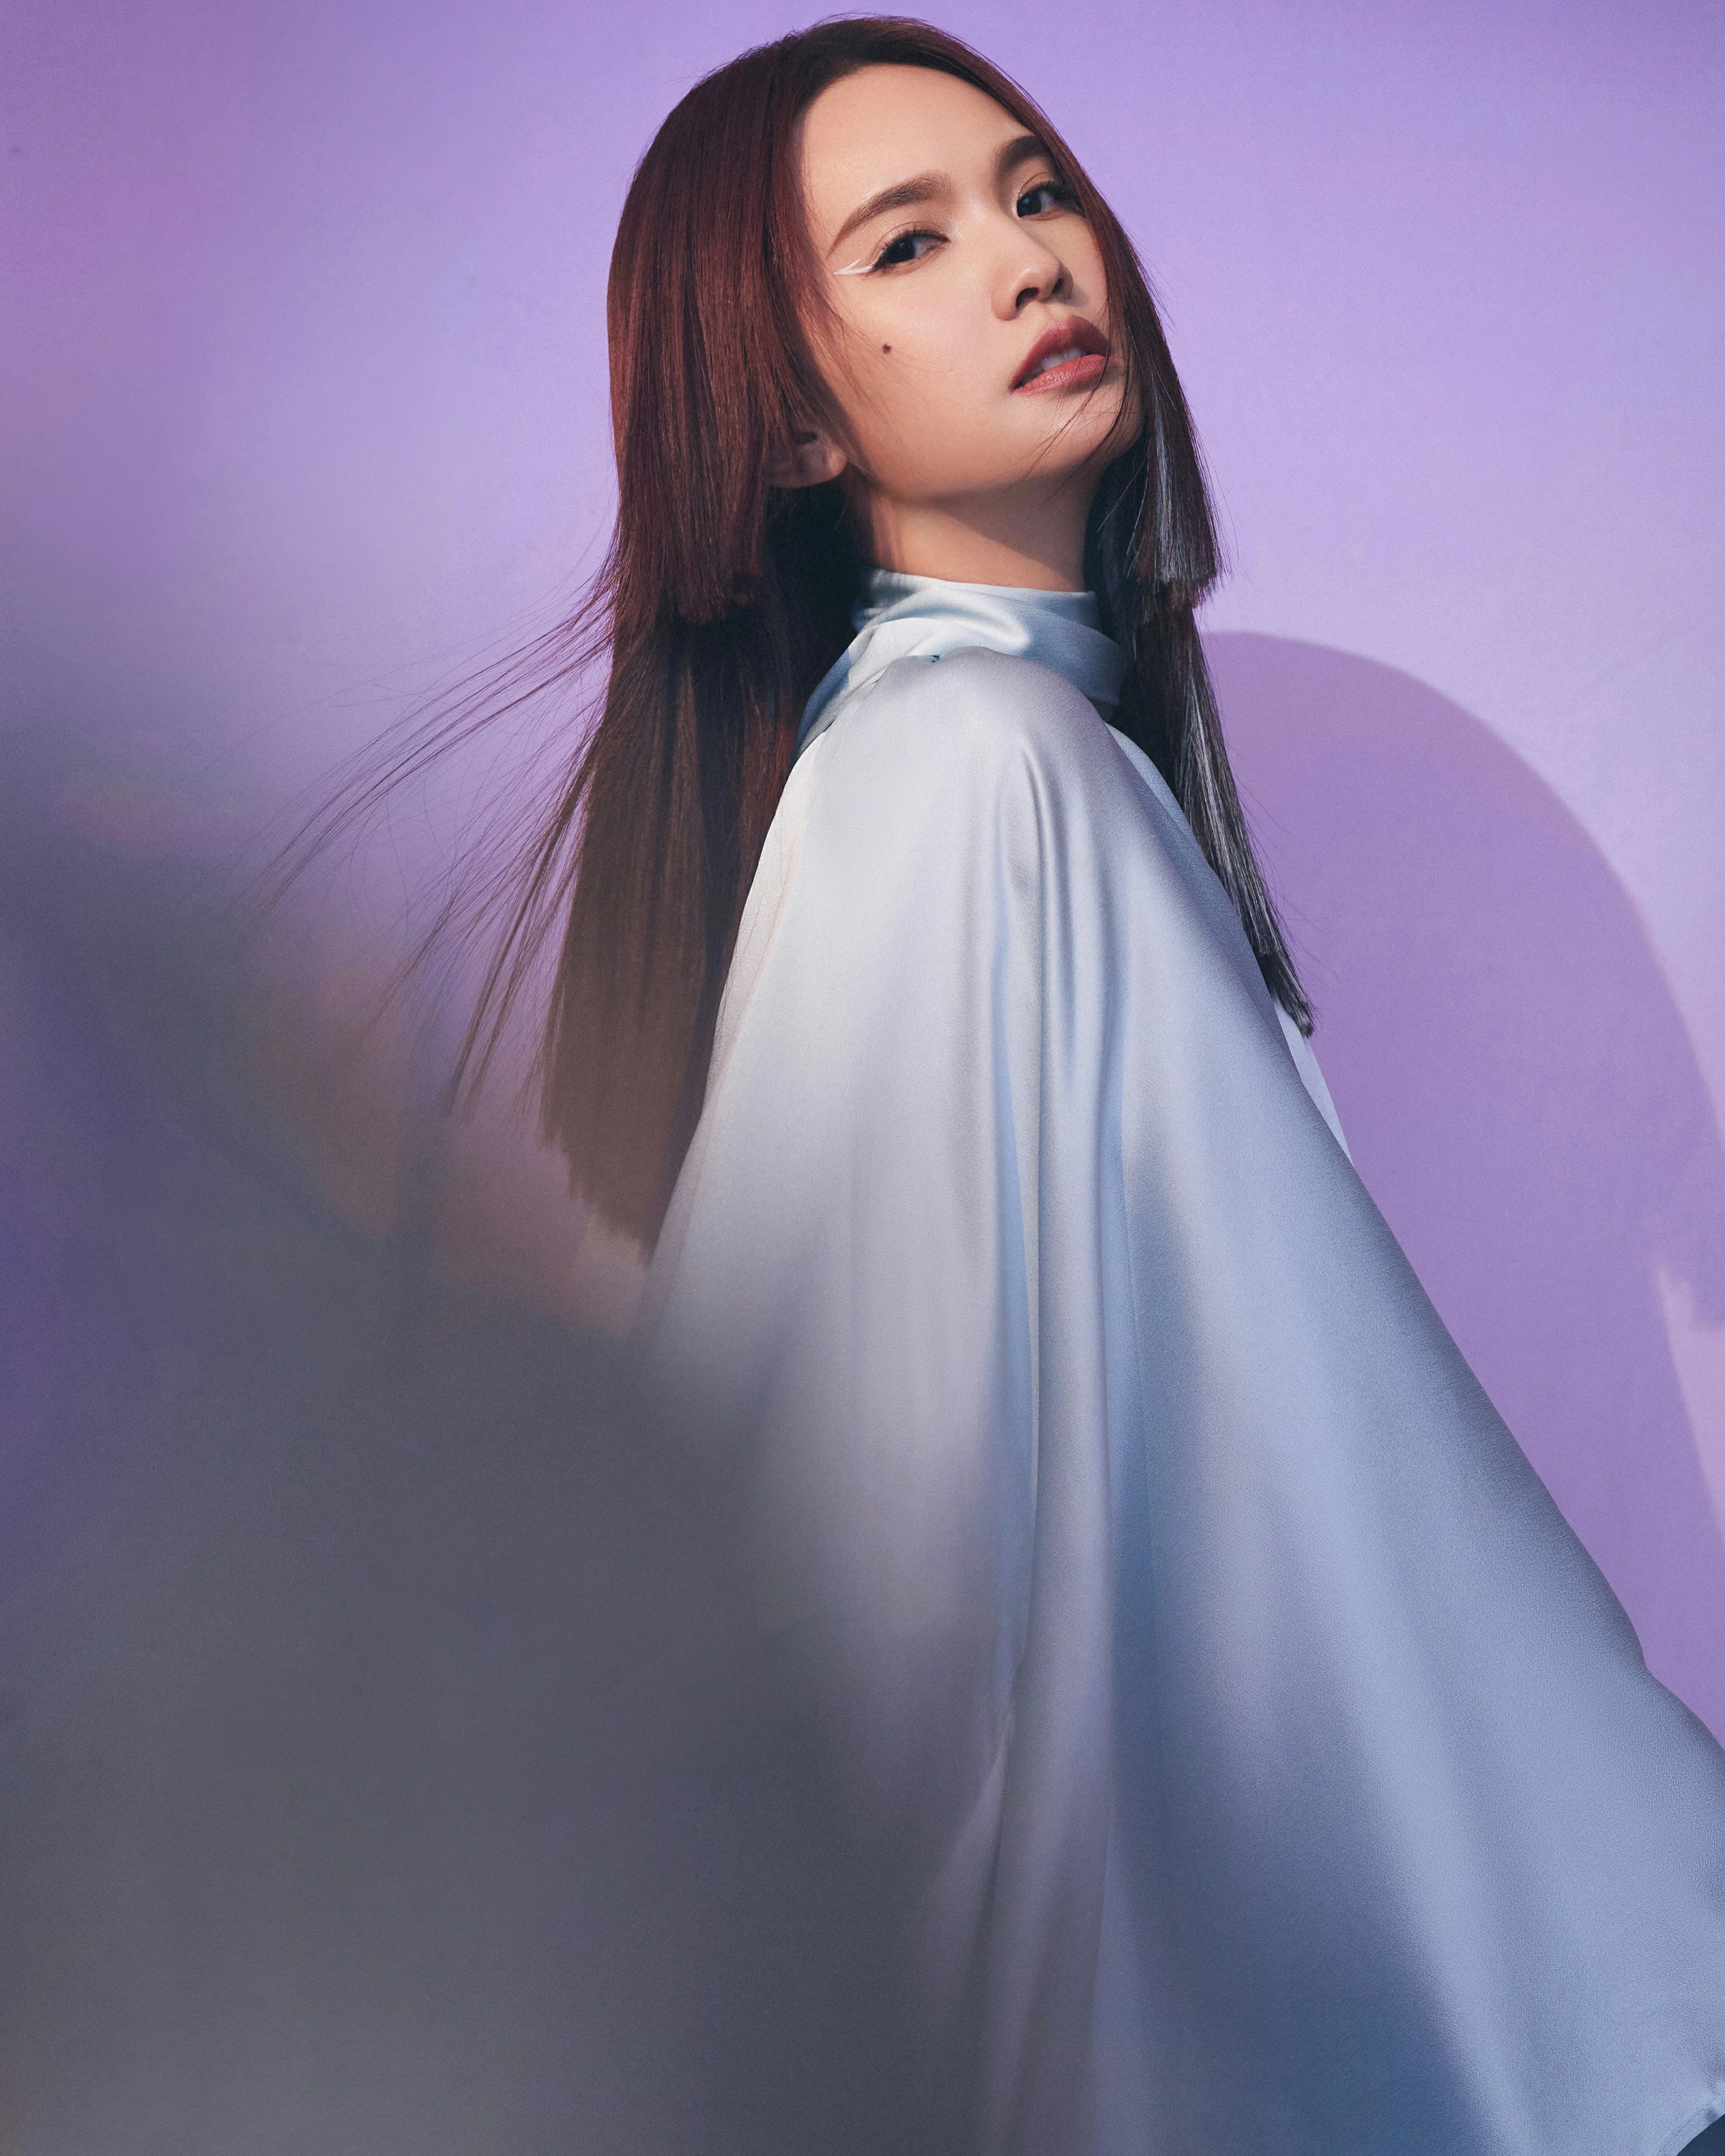 杨丞琳亮相本周《闪光的乐队》 挑染公主切造型带来《天堂》舞台,13